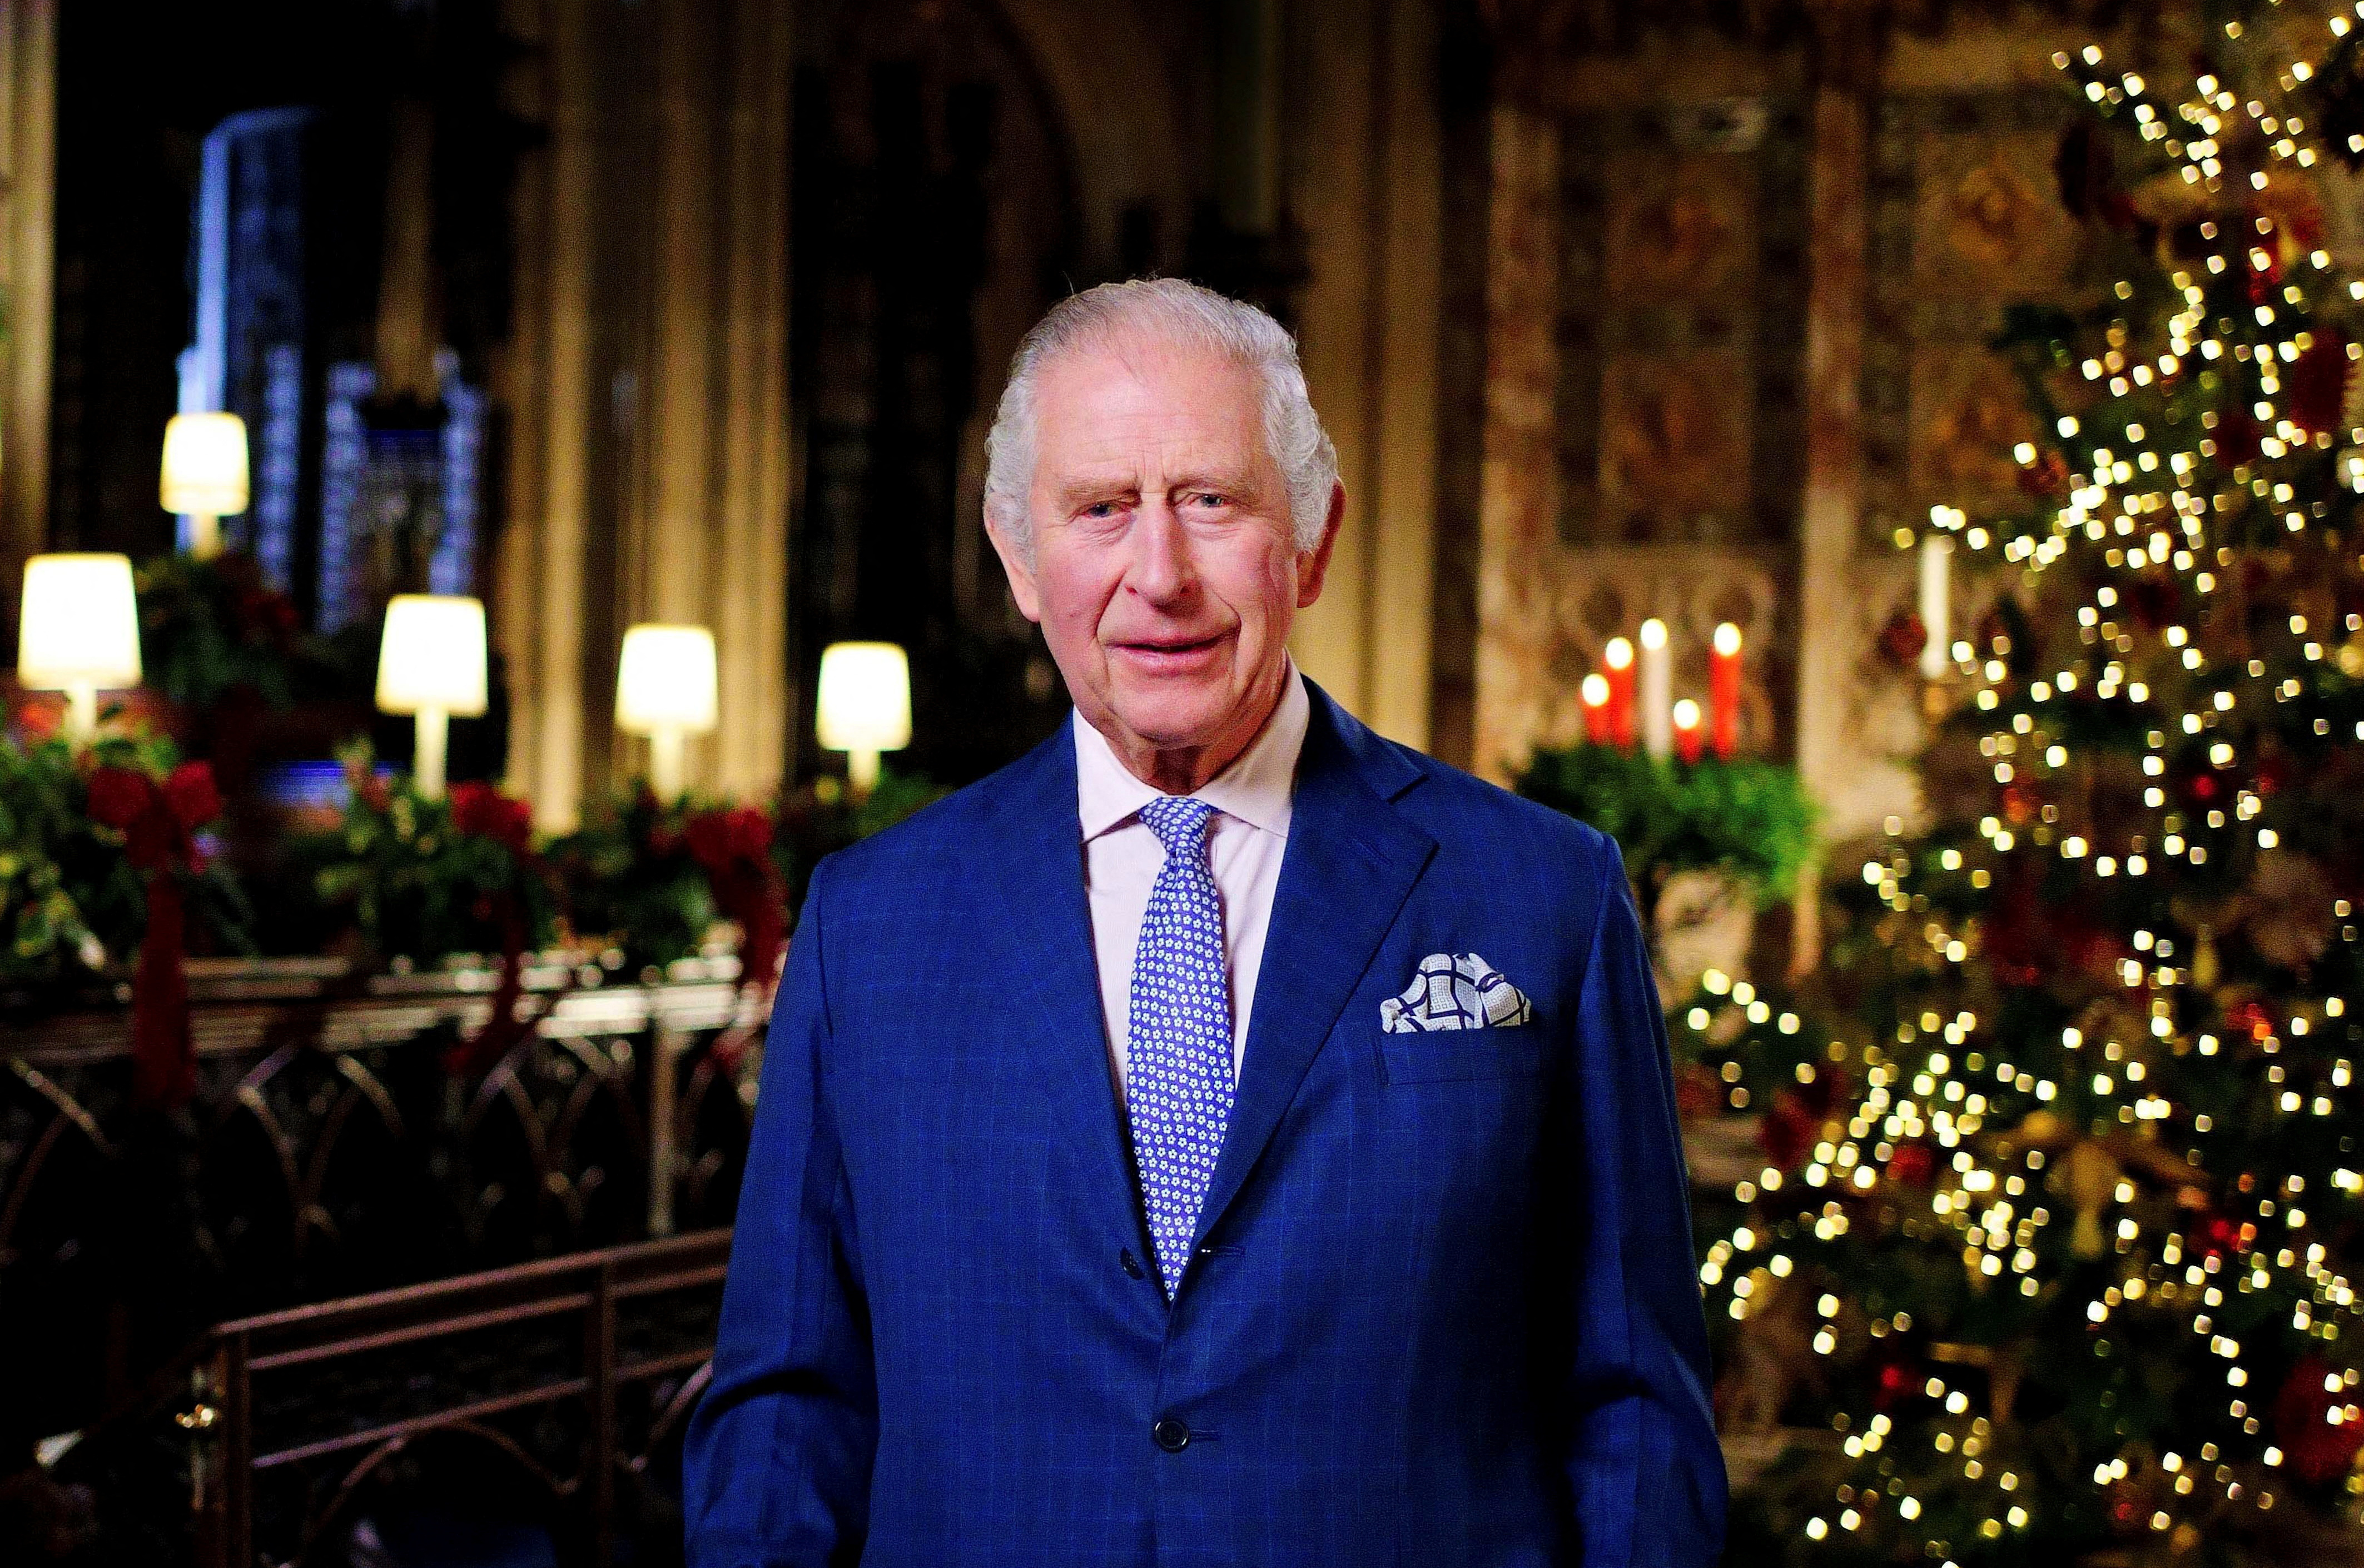 Según la residencia oficial de la familia real británica, los materiales que se han utilizado para decorar el árbol de Navidad incluyen papel y vidrio, así como productos naturales como piñas. (Victoria Jones/Pool via REUTERS)